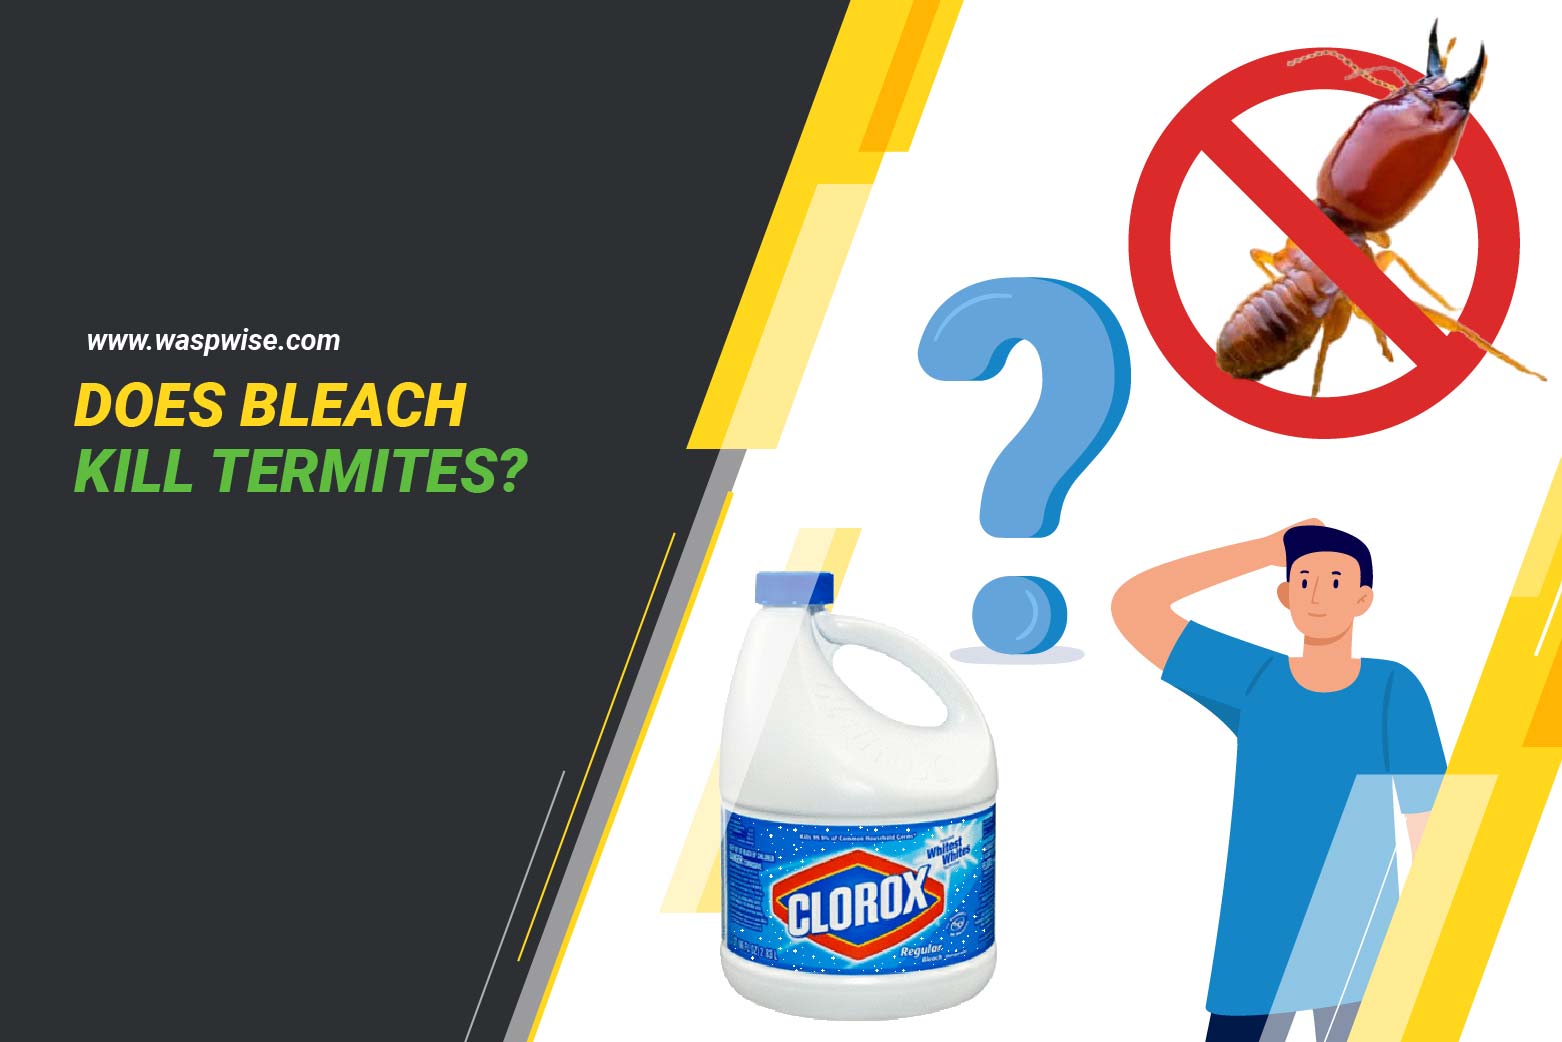 Does bleach kill termites